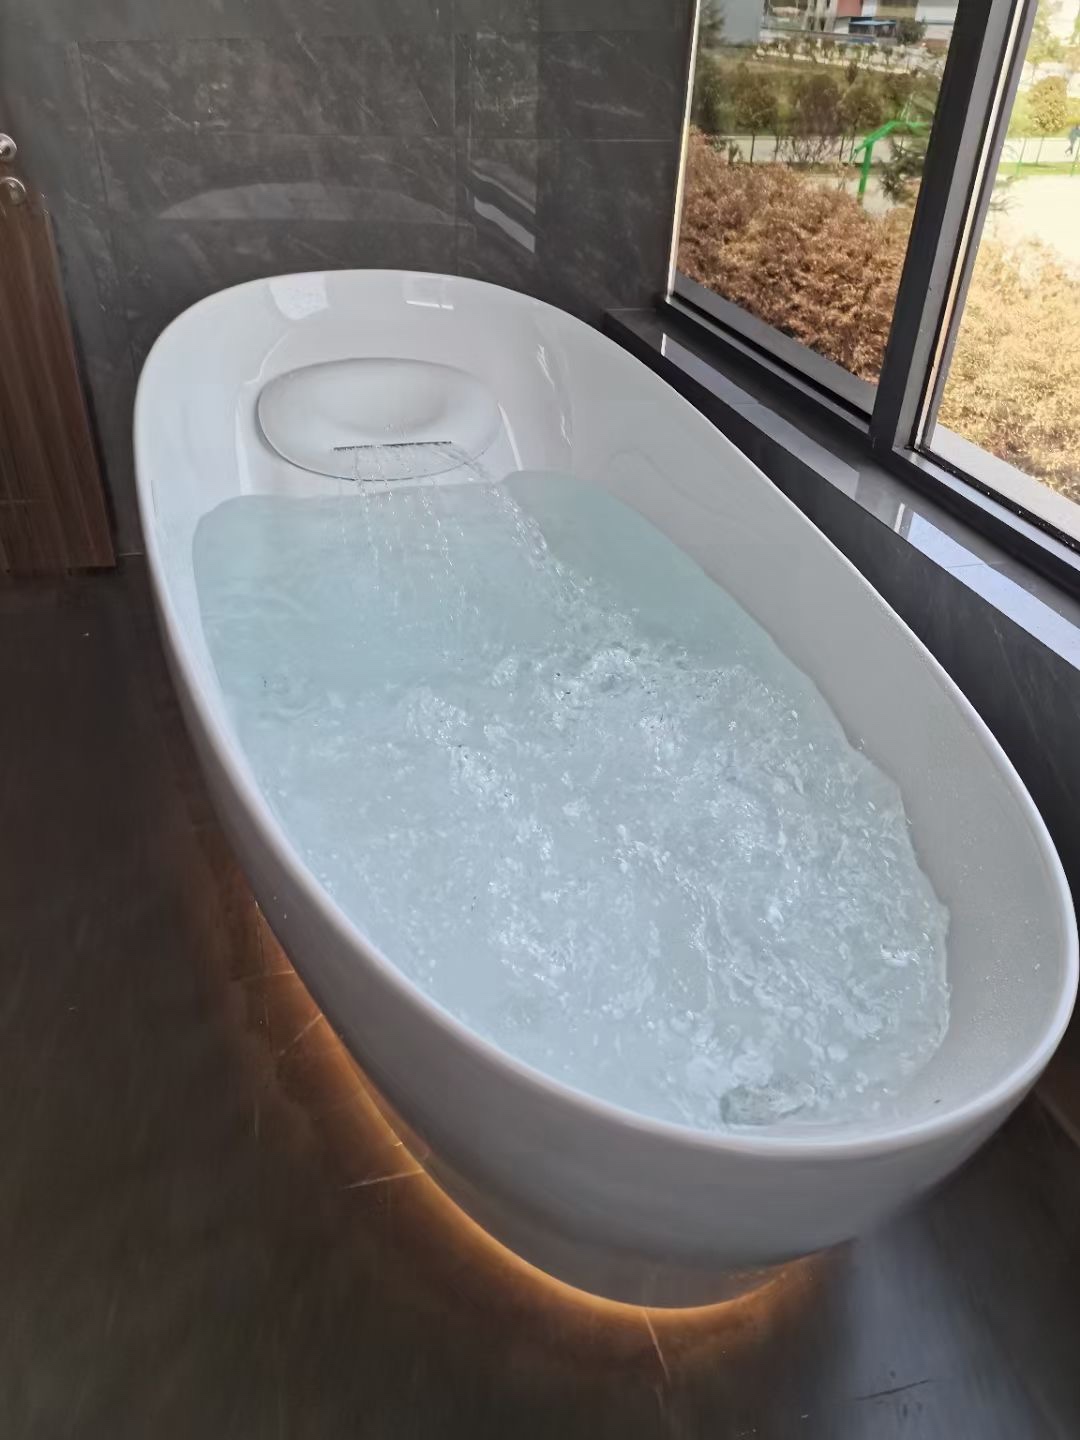 TOTO按摩浴缸PJYD2200PW晶雅气泡冲浪按摩浴缸2.2米独立式漂浮缸